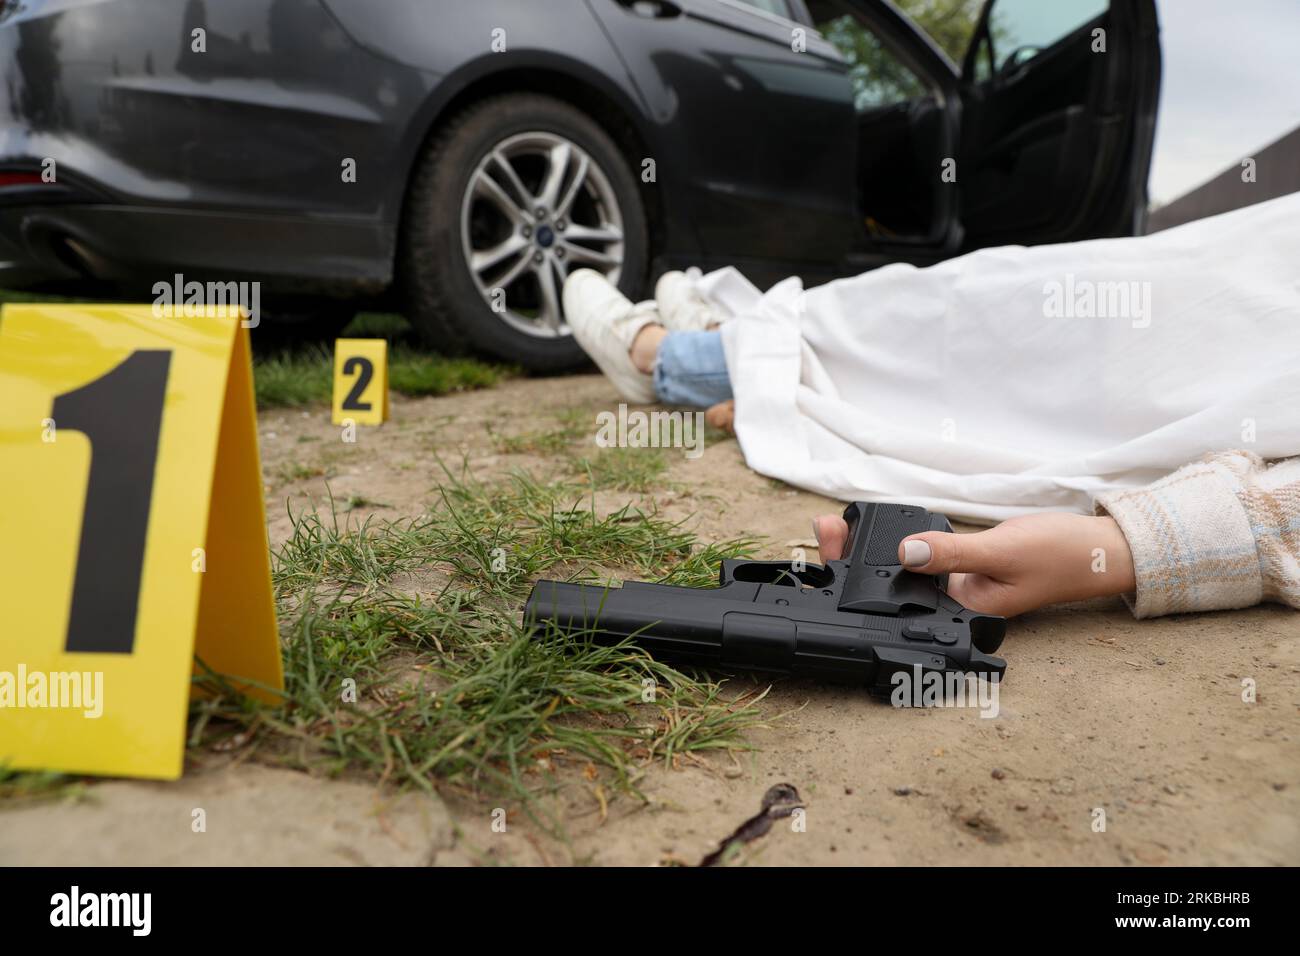 Scena del crimine con il corpo di una donna morta, pistola e marcatori all'aperto, primo piano Foto Stock